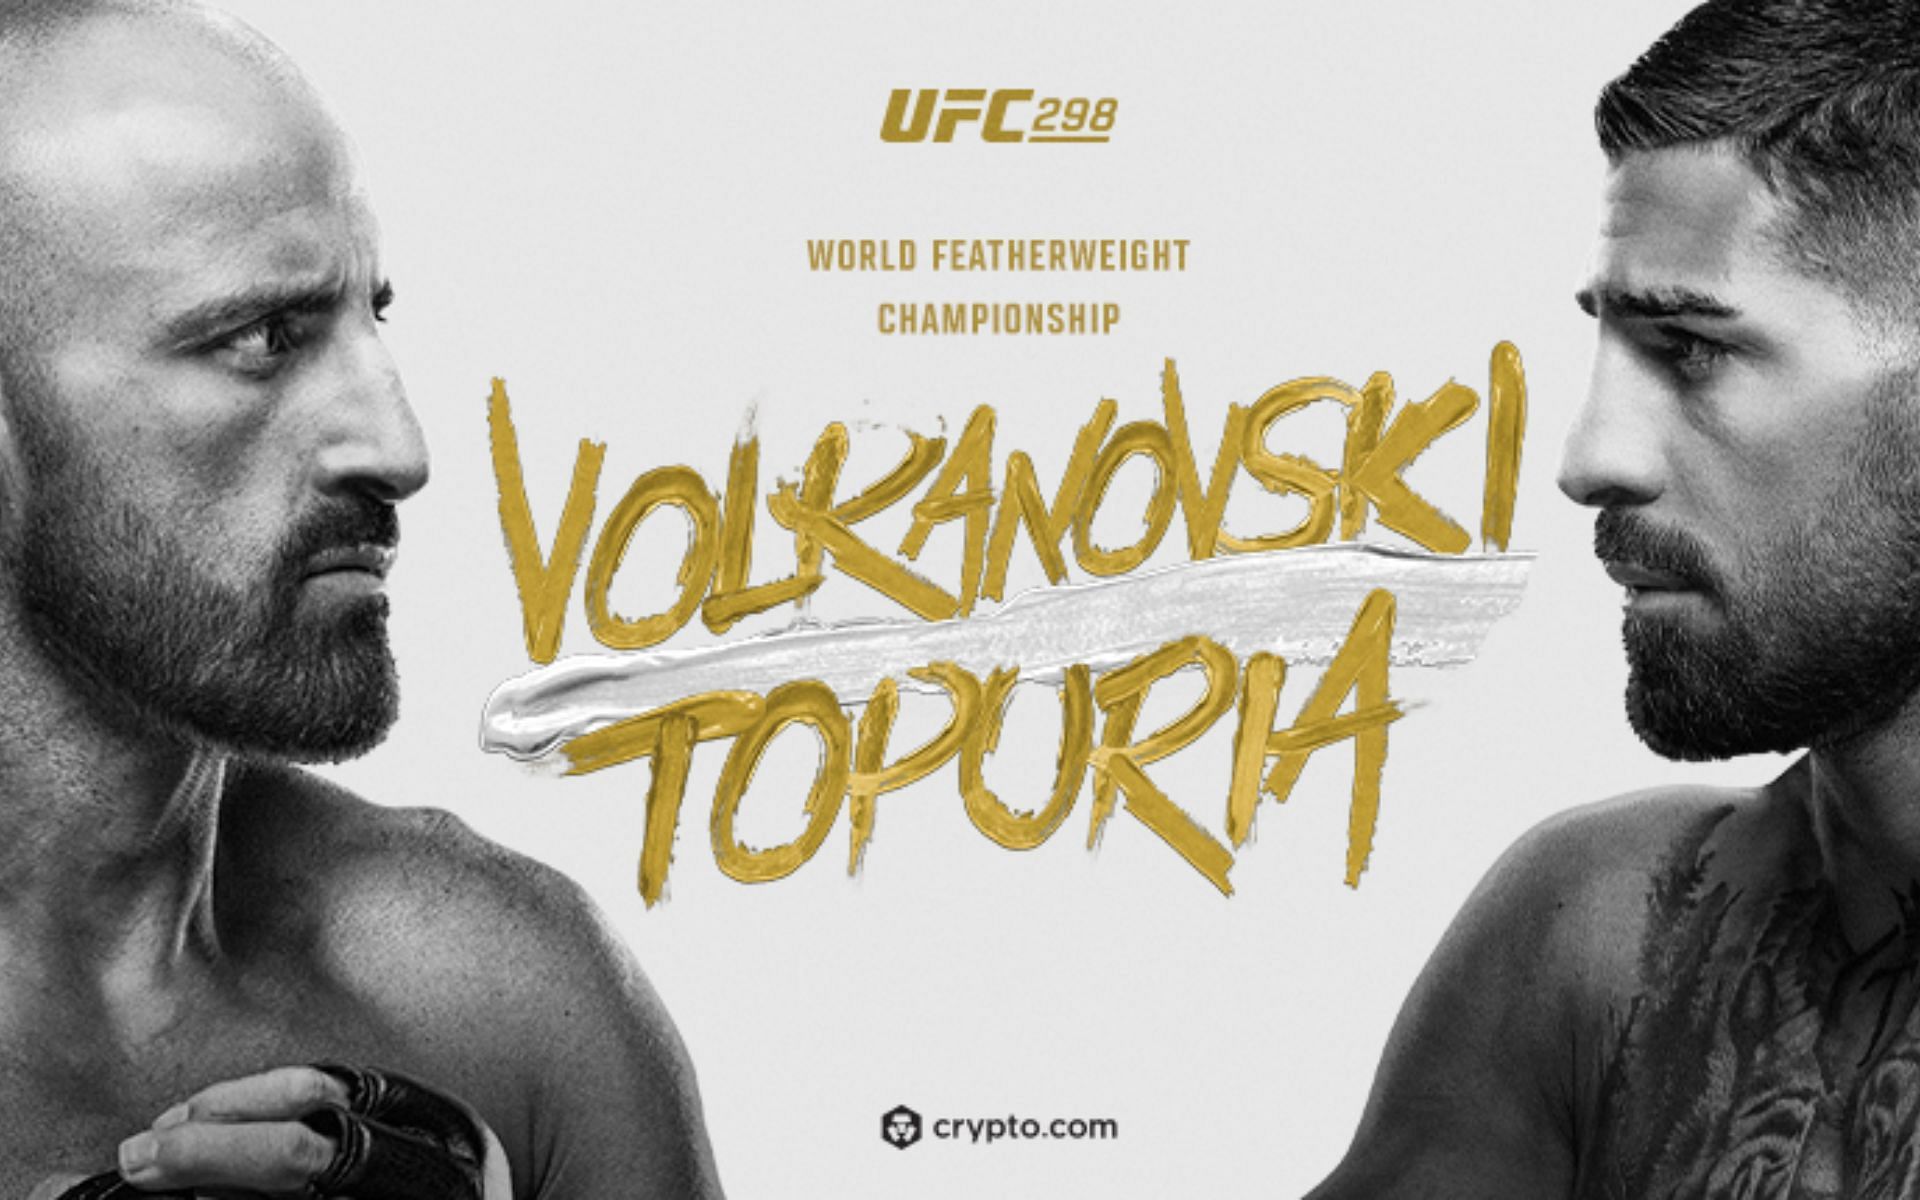 UFC 298: Alexander Volkanovski vs. Ilia Topuria commentary team